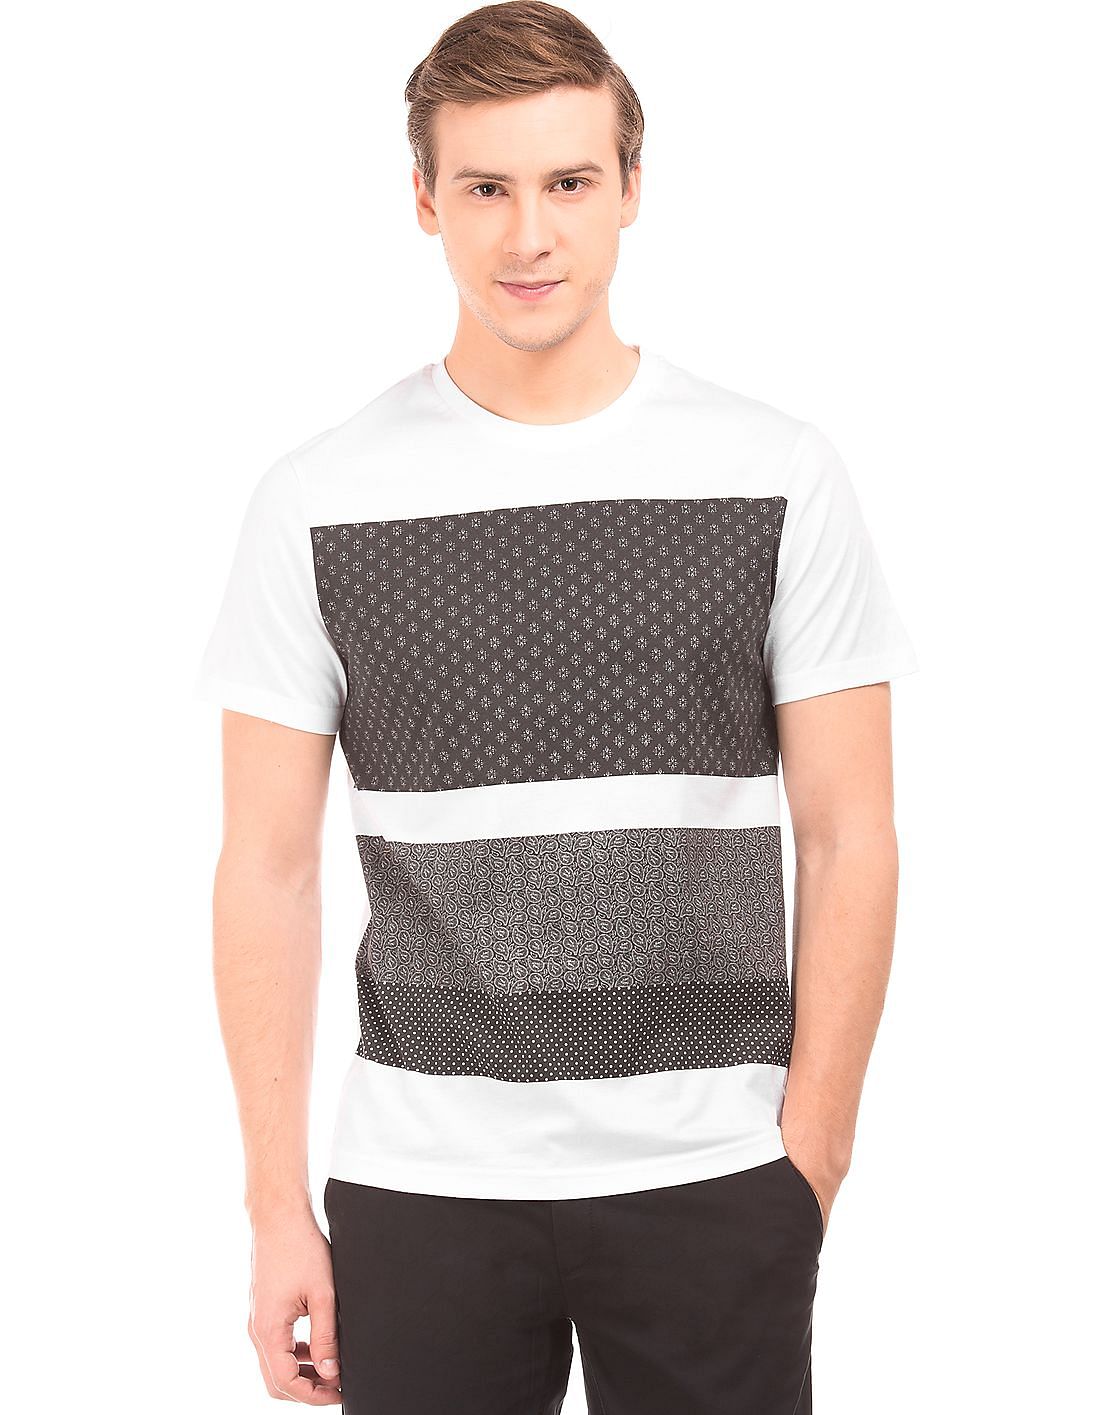 Buy Arvind Men Printed Front Super Slim Fit T-Shirt - NNNOW.com